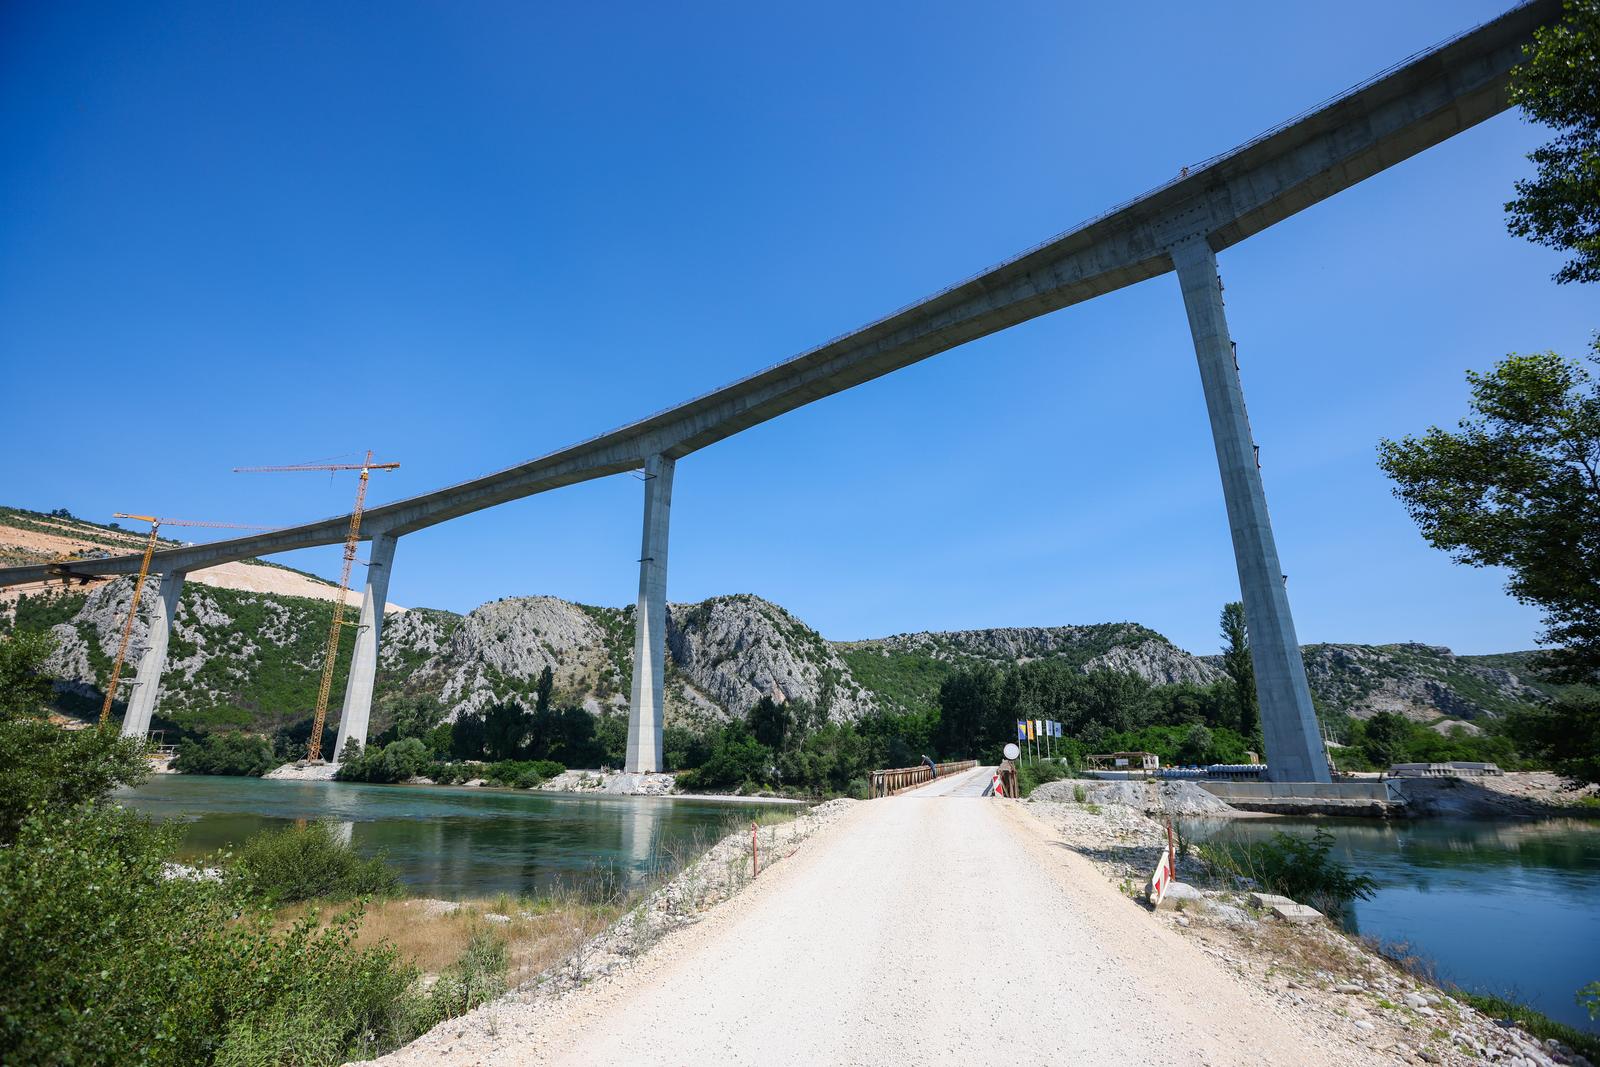 18.06.2023.,Capljina -  Jedan od najvisih mostova u regiji, most Pocitelj uskoro ce biti  spojen s lijevom obalom Neretve. Most Pocitelj visok je nesto vise od stotinu metara, dok njegova duzina iznosi 918 metara. Most ce imati dva vozna traka u svakom smjeru, te je projektiran za brzinu do 130 kilometara na sat. Specificnost ovog mosta je da se citava sirina raspona nalazi na jednostrukom nizu stupova, tj, kolnici nisu fizicki odvojeni. Most Pocitelj najveci je objekt na koridoru Vc. 


 Photo: Denis Kapetanovic/PIXSELL